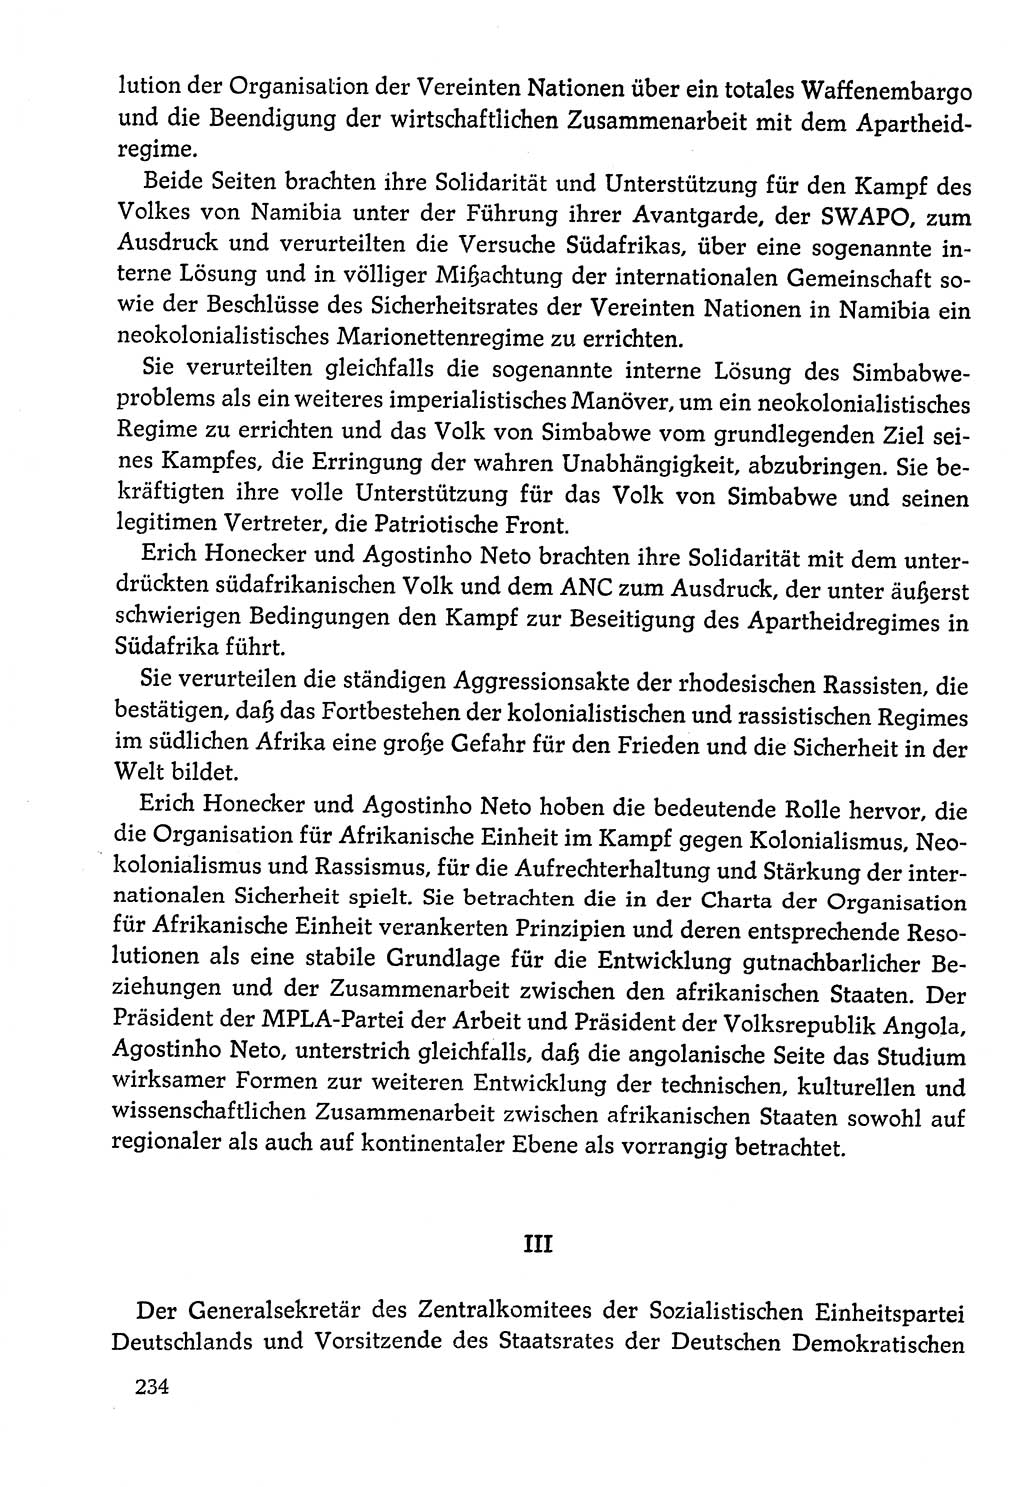 Dokumente der Sozialistischen Einheitspartei Deutschlands (SED) [Deutsche Demokratische Republik (DDR)] 1978-1979, Seite 234 (Dok. SED DDR 1978-1979, S. 234)